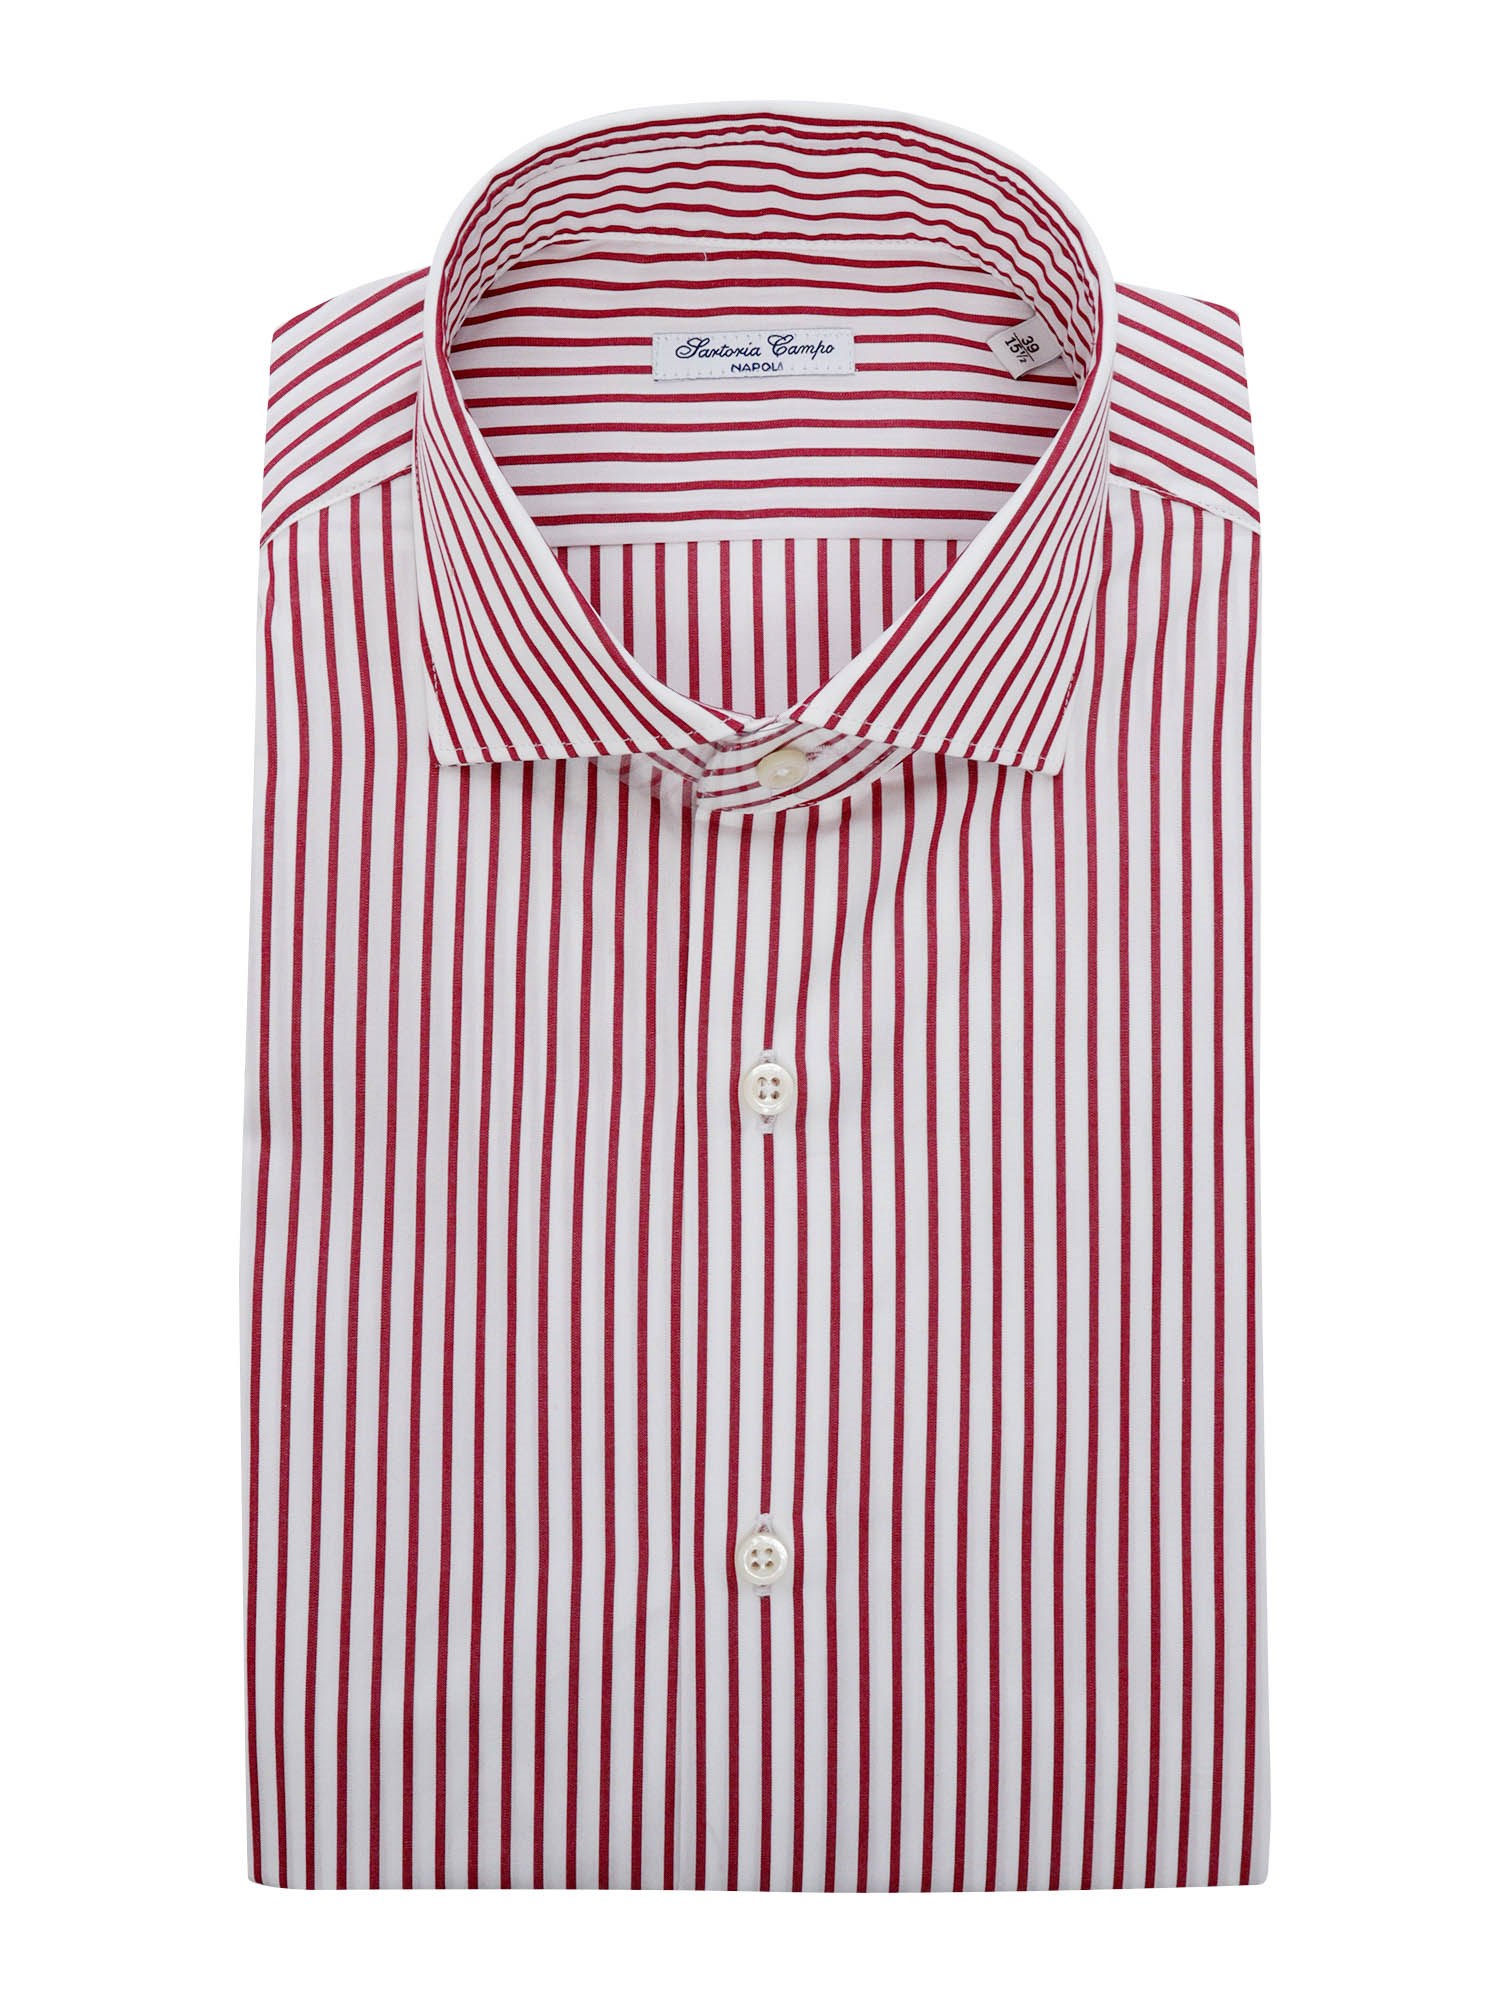 Sartoria Del Campo-sonrisa Red And White Striped Shirt In Multi